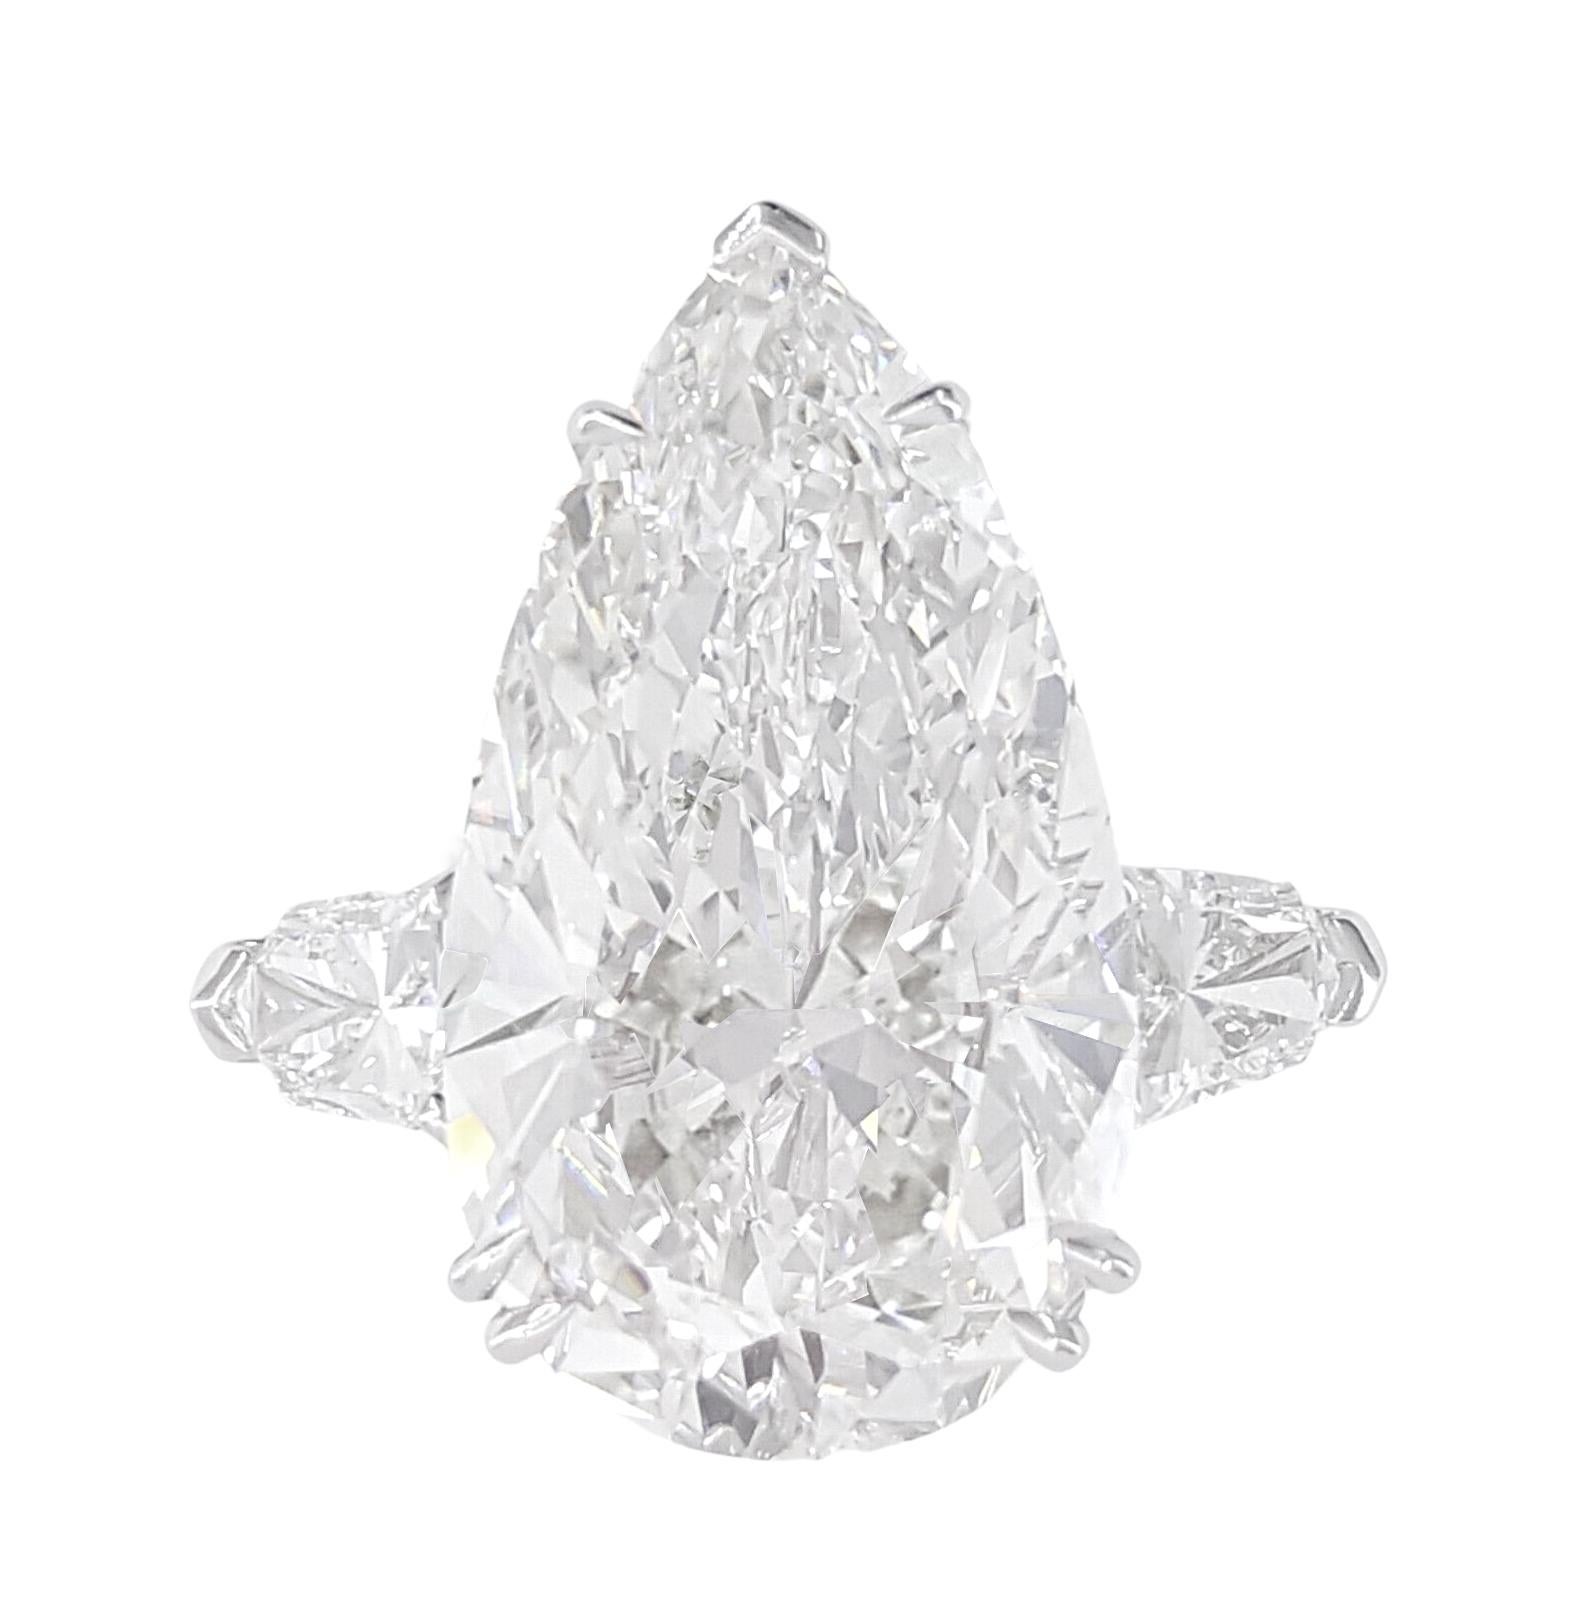 exquisiter 3,90-Karat-Diamantring im Birnenschliff, ein wahres Zeugnis zeitloser Eleganz und unvergleichlicher Handwerkskunst. Jede Facette dieses faszinierenden Edelsteins wurde von GIA sorgfältig geprüft und zertifiziert, um seine Echtheit und